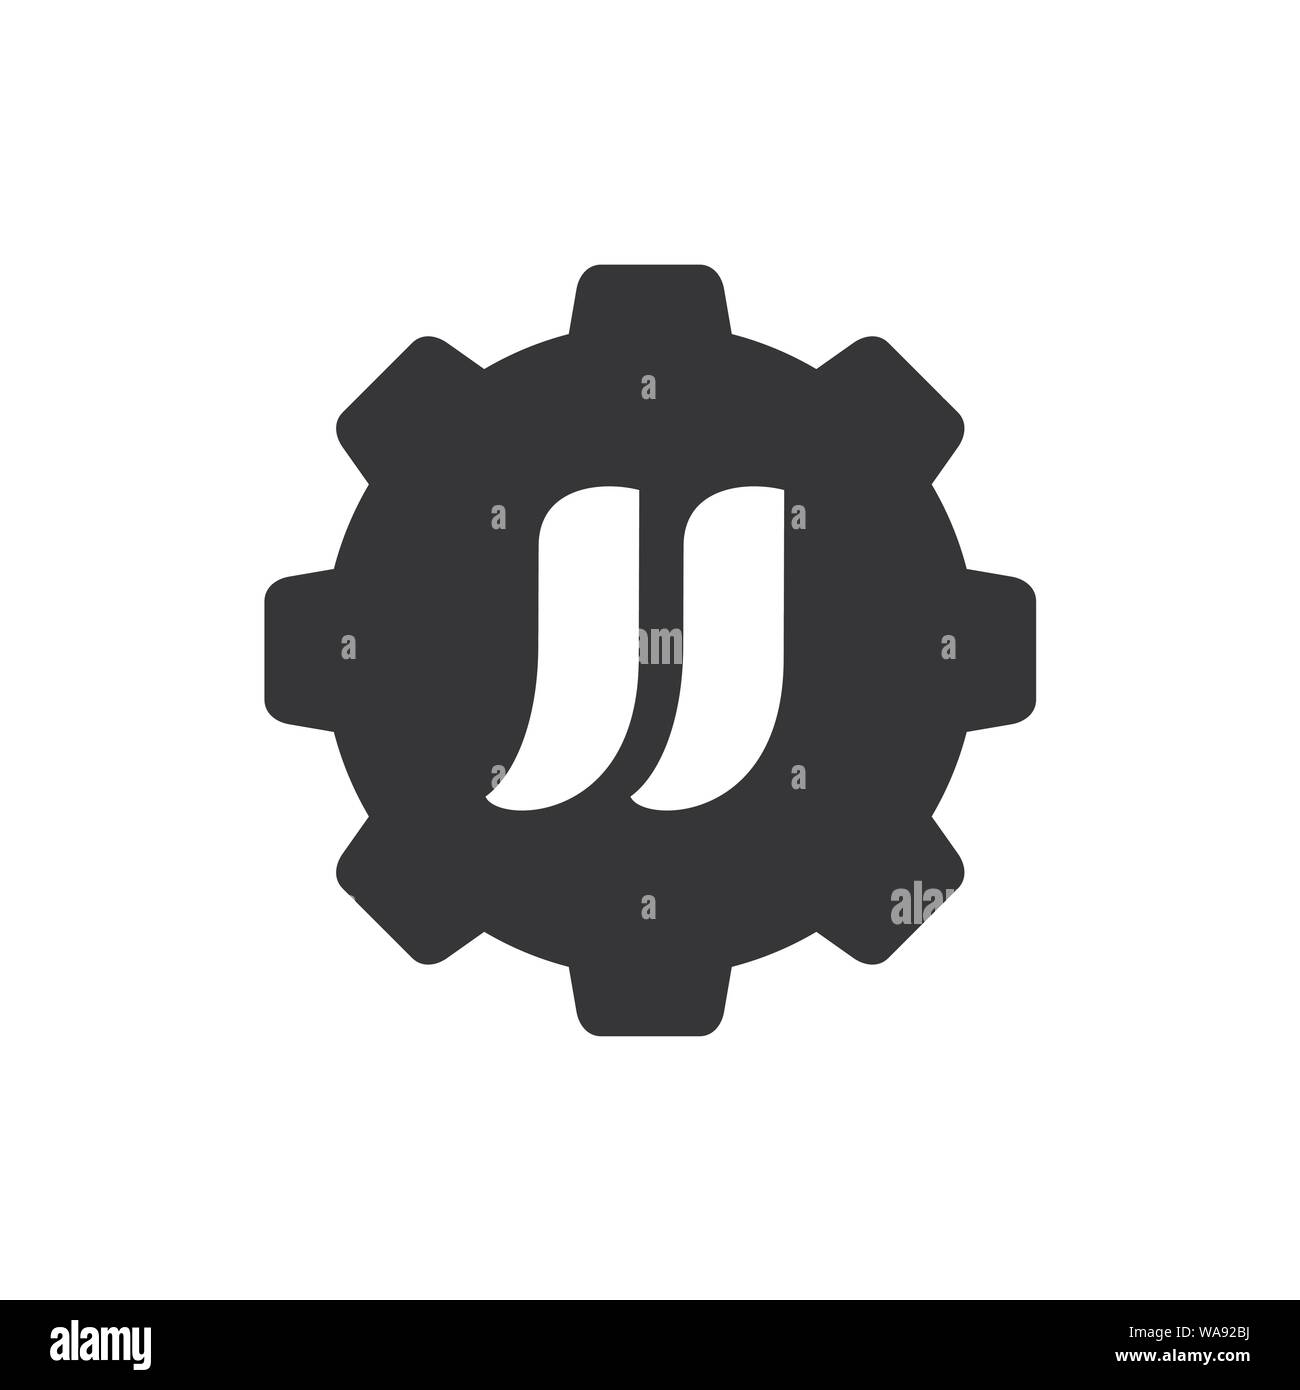 Les juges L'Alphabet combiné avec pignon, logo Vector Icon design, illustration en noir et blanc Illustration de Vecteur